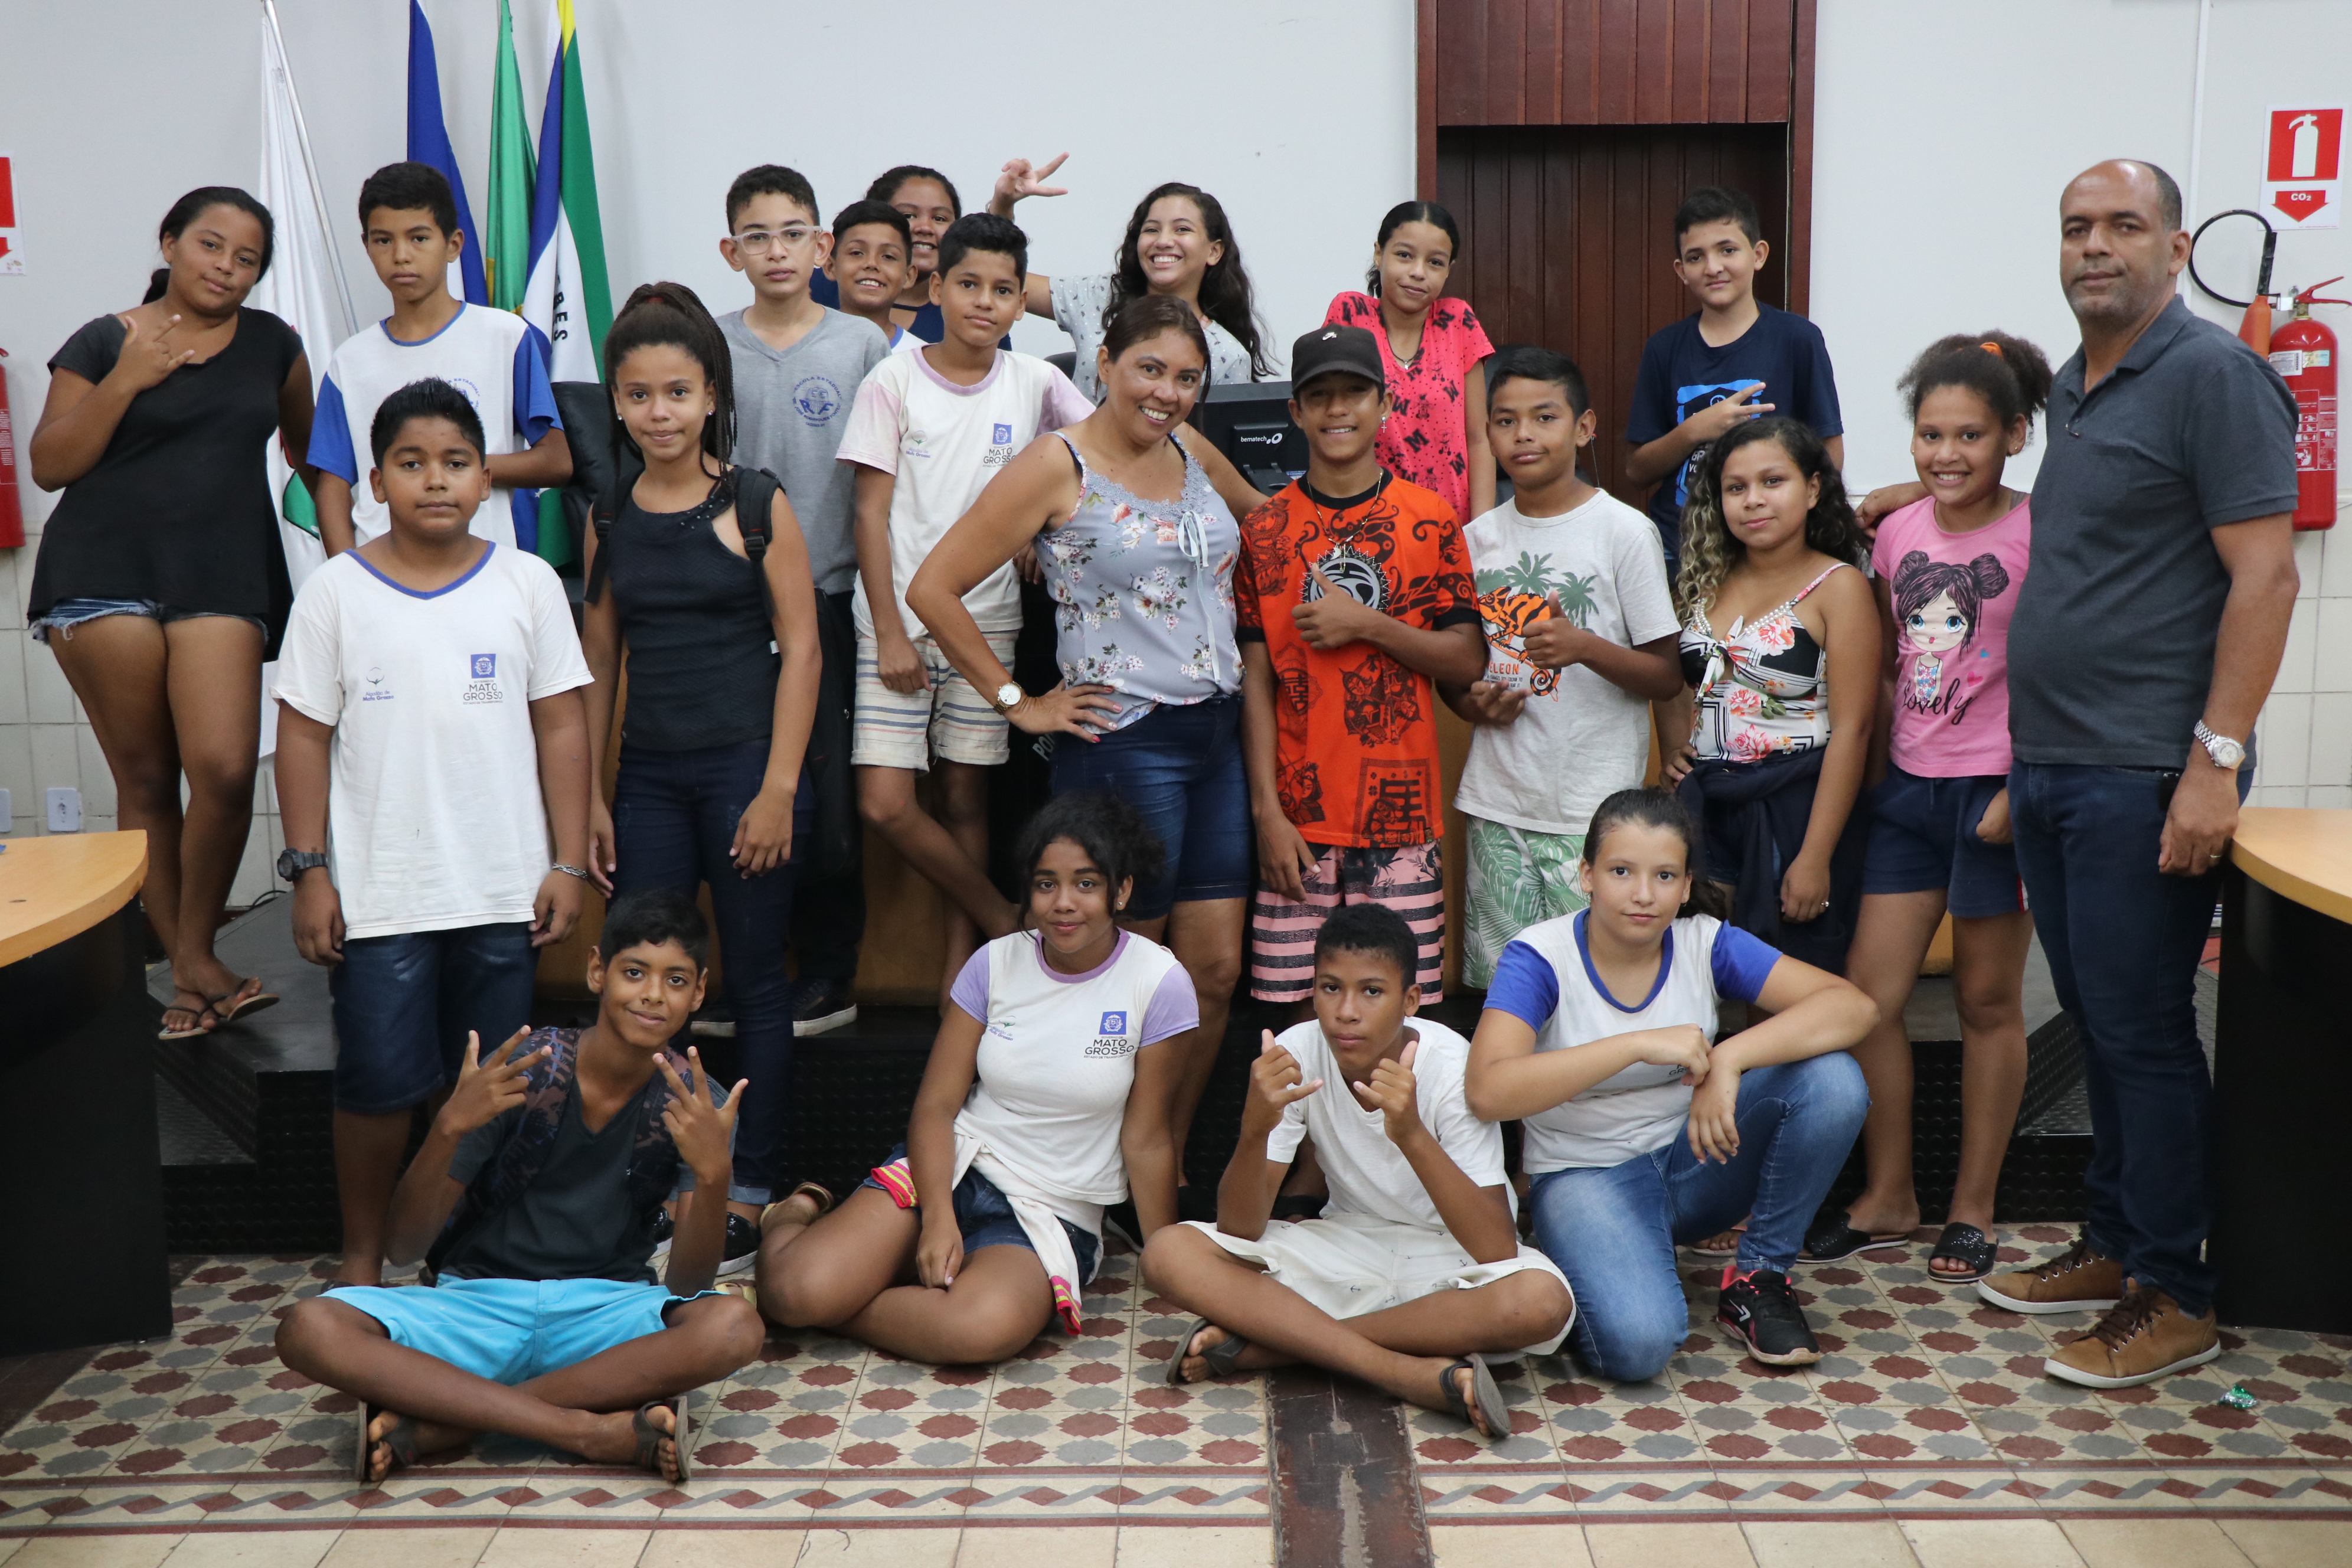 Alunos da Escola José Rodrigues Fontes visitam a Câmara e aprendem sobre o Legislativo